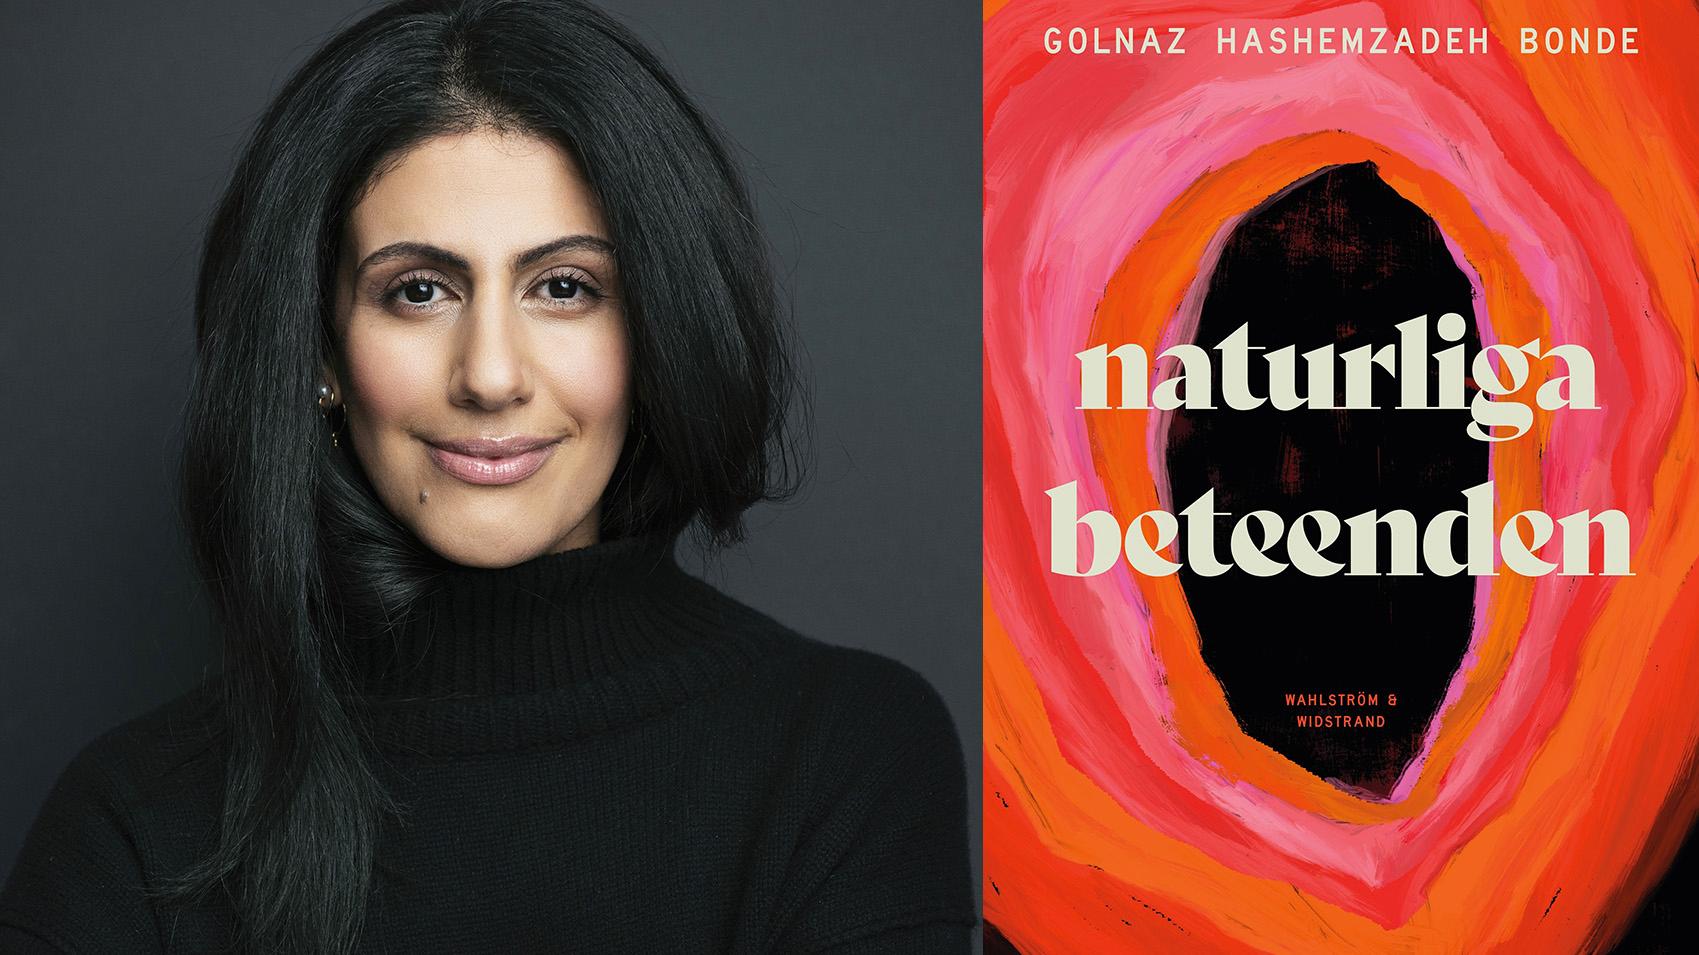 Golnaz Hashemzadeh Bonde (född 1983), är ekonom och grundare av organisationen Inkludera. Hon debuterade 2012 med ”Hon är inte jag”. ”Naturliga beteenden” är hennes tredje roman.